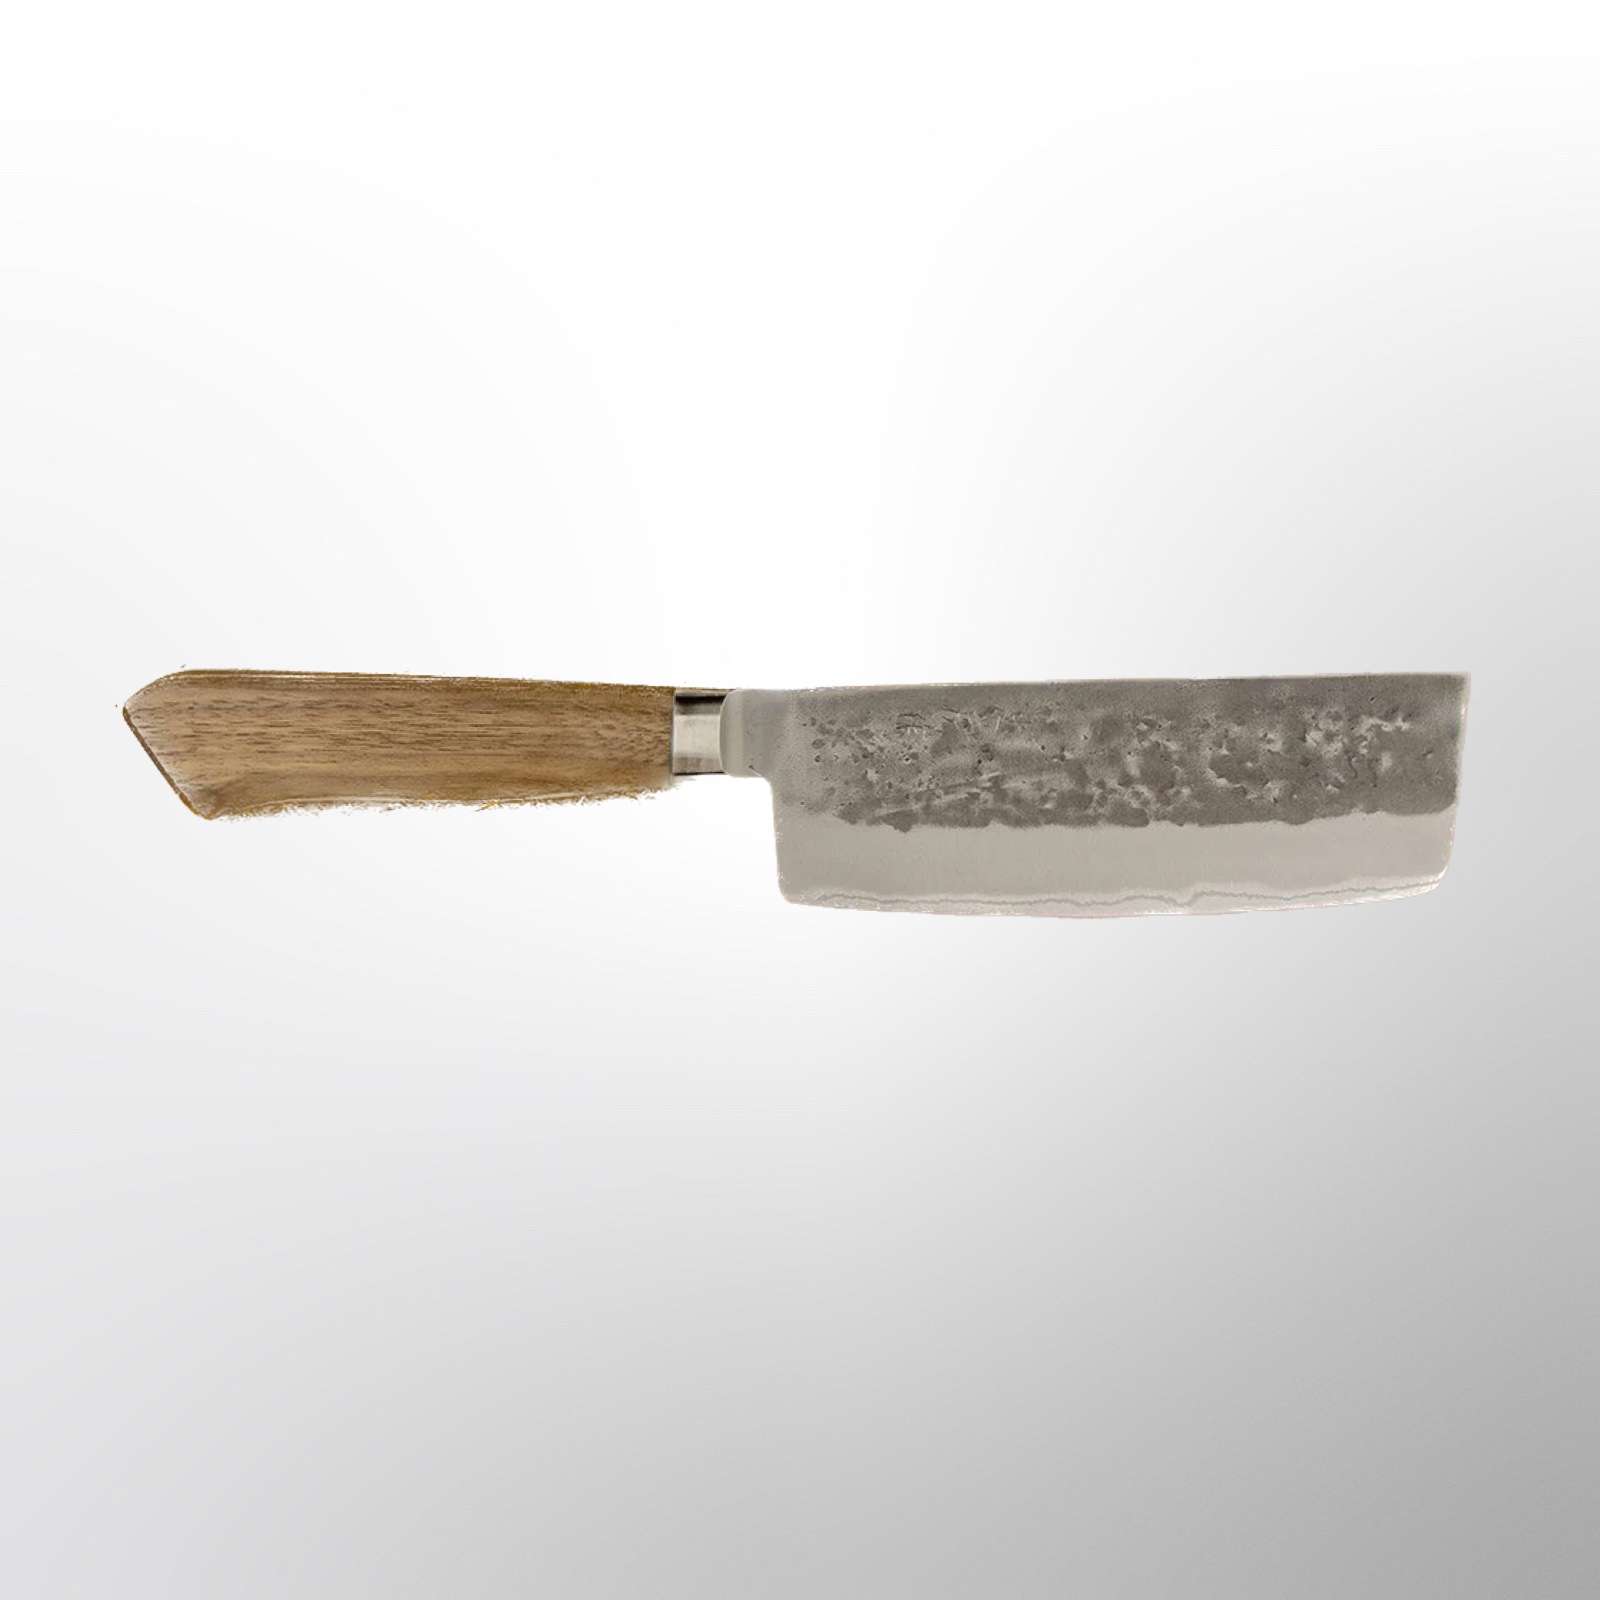  סכין ירקות נקירי 150מ״מ מחוזקת 3 שכבות: פלדת פחמן יפנית אוגמי2 עטופה פלדת אל-חלד גימור נשיג׳י טדאפוסה יפן